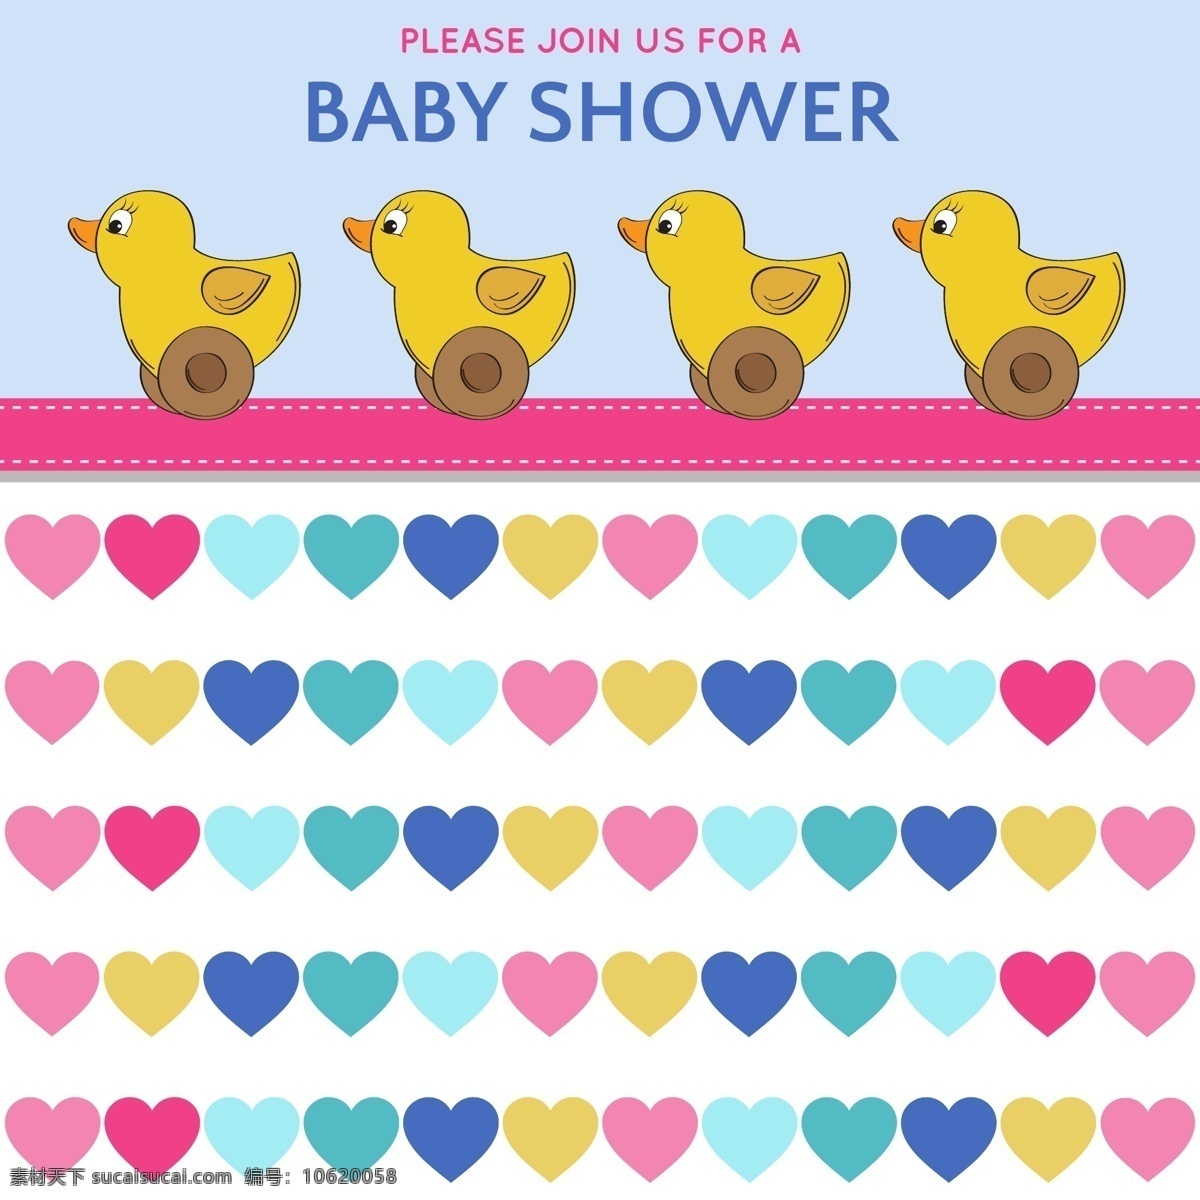 婴儿 淋浴 玩具 鸭 海报 横幅 生日 邀请 卡片 卡通 婴儿淋浴 文字 事件 男孩 欢迎 滑稽 公告 新生儿 出生 到达